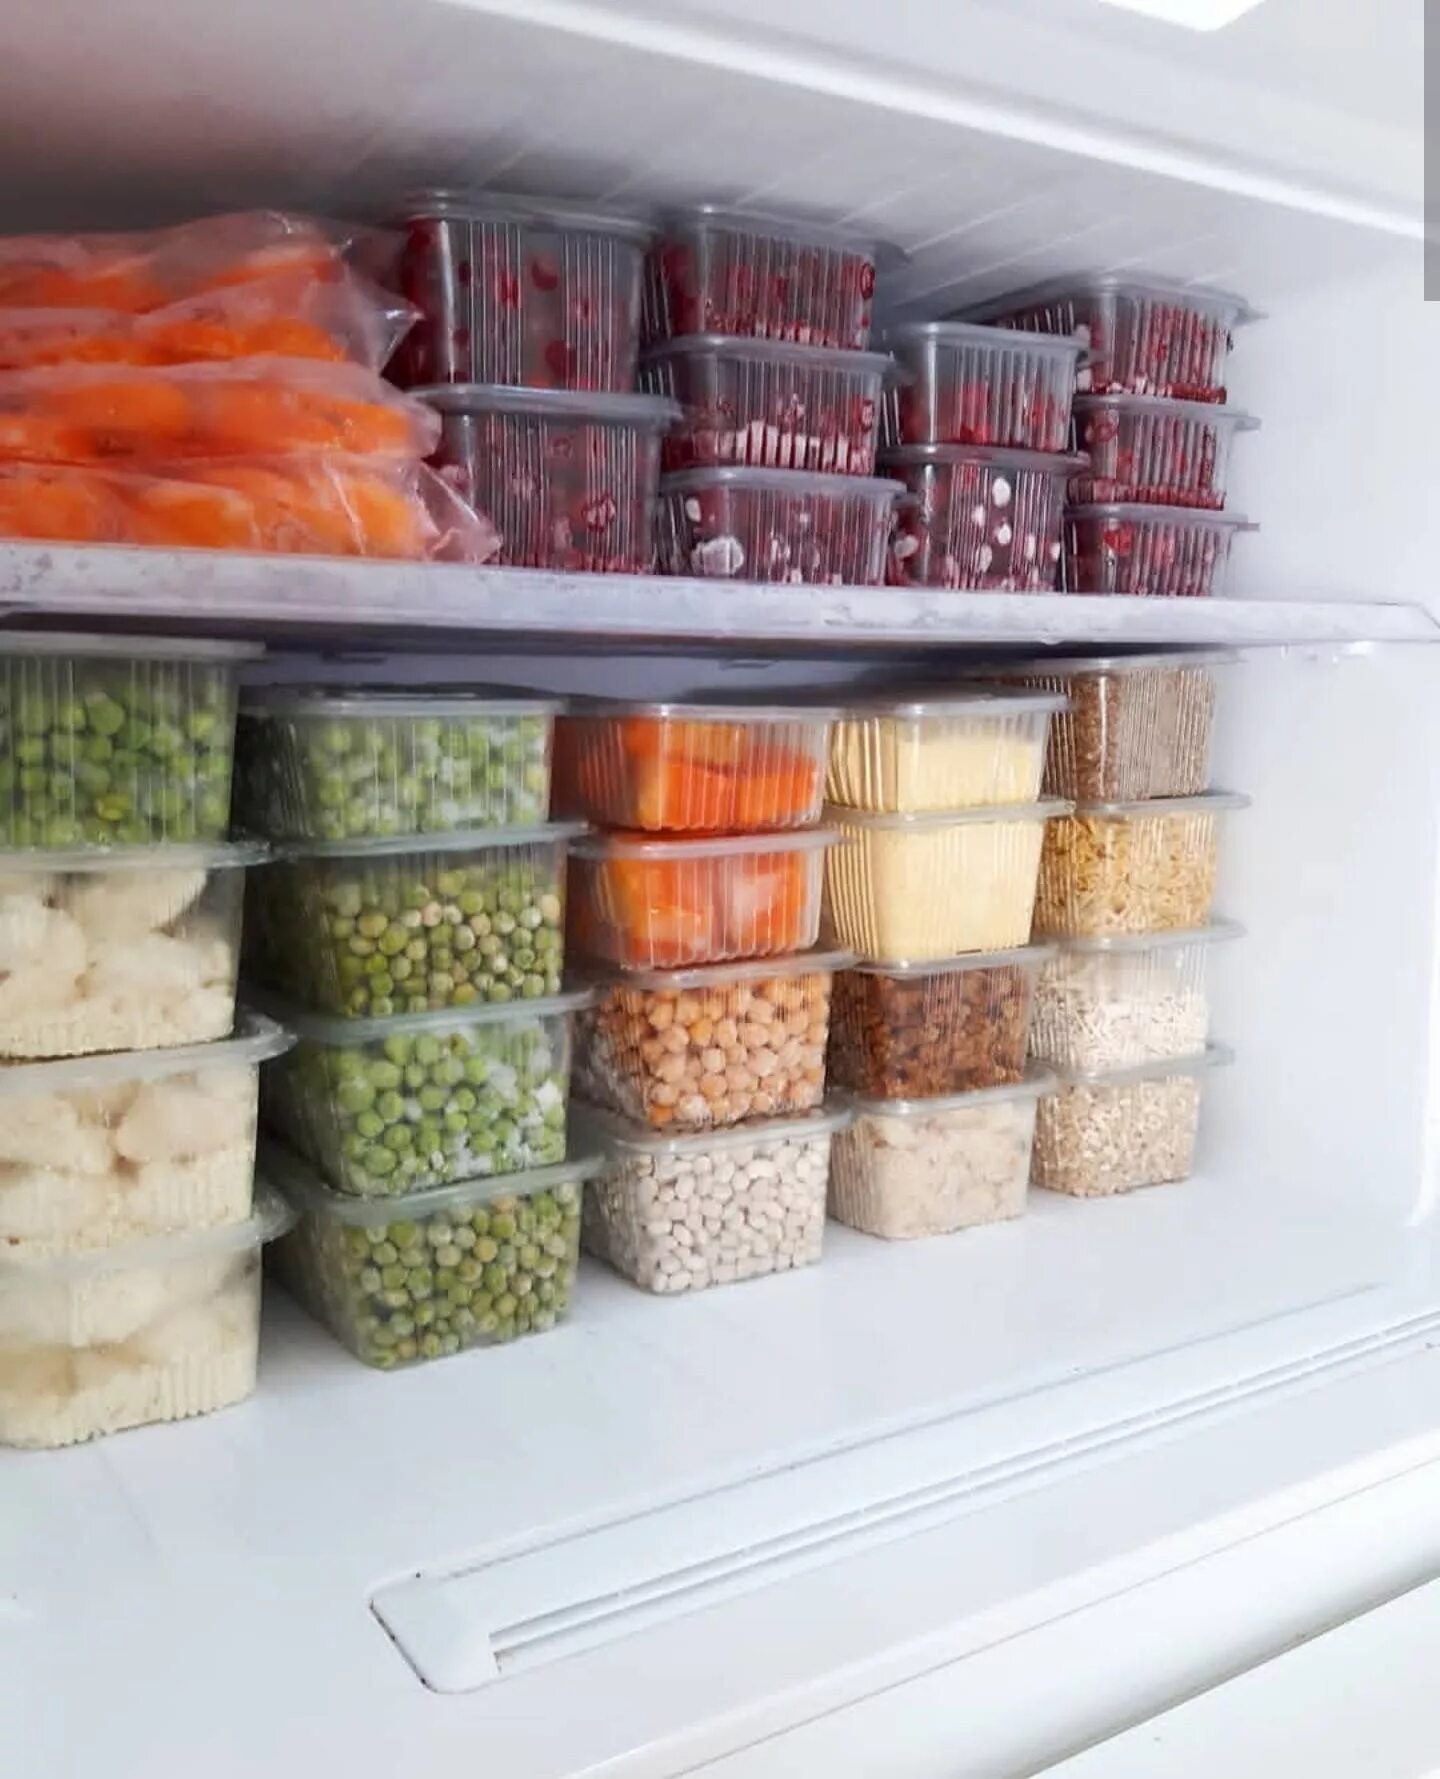 Организация хранения готовых блюд. Хранение в морозильной камере. Порядок в морозилке. Организация хранения в морозильной камере. Хранение продуктов в морозильнике.